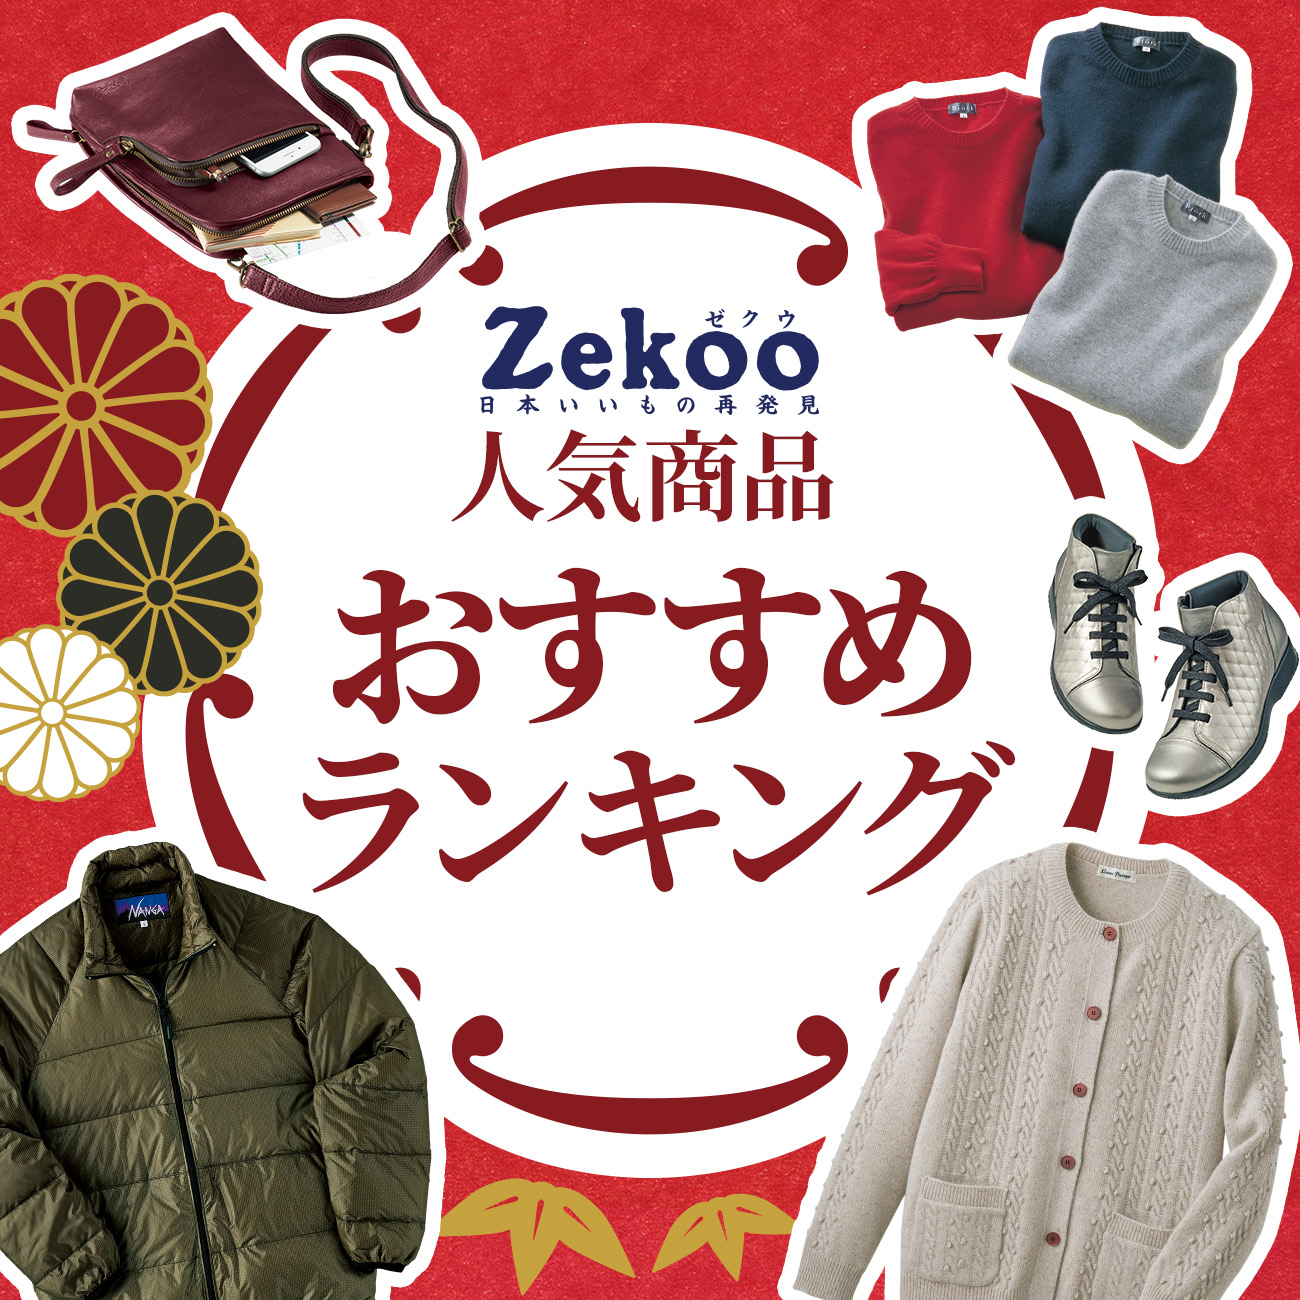 【特集】Zekoo 人気商品おすすめランキング